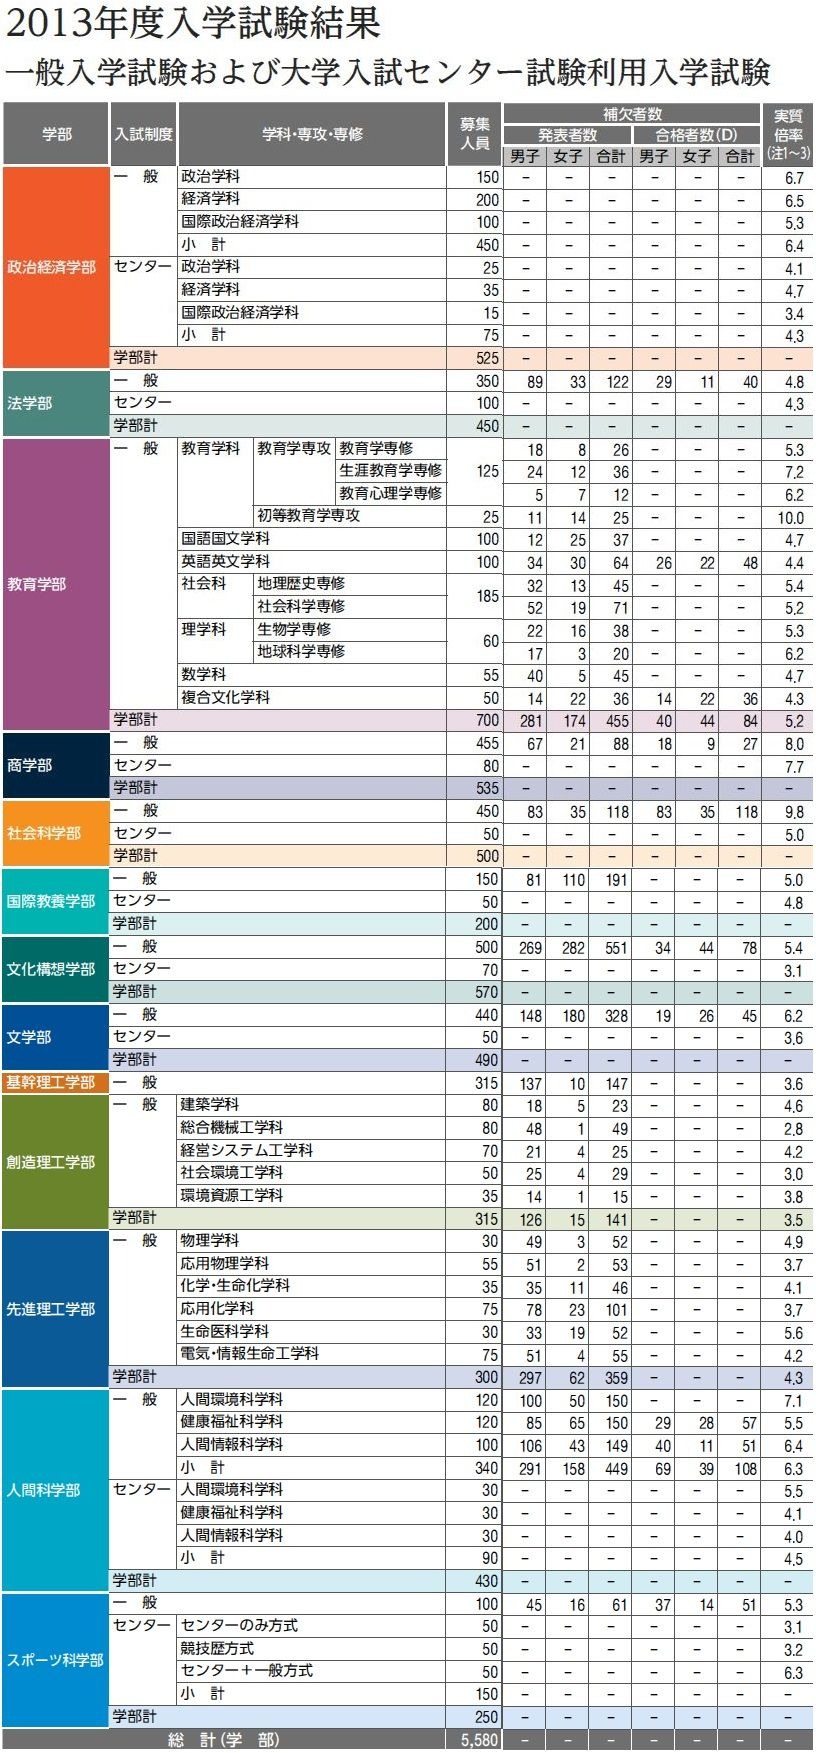 大学受験14 早稲田の補欠合格実績 昨年は551人 リセマム